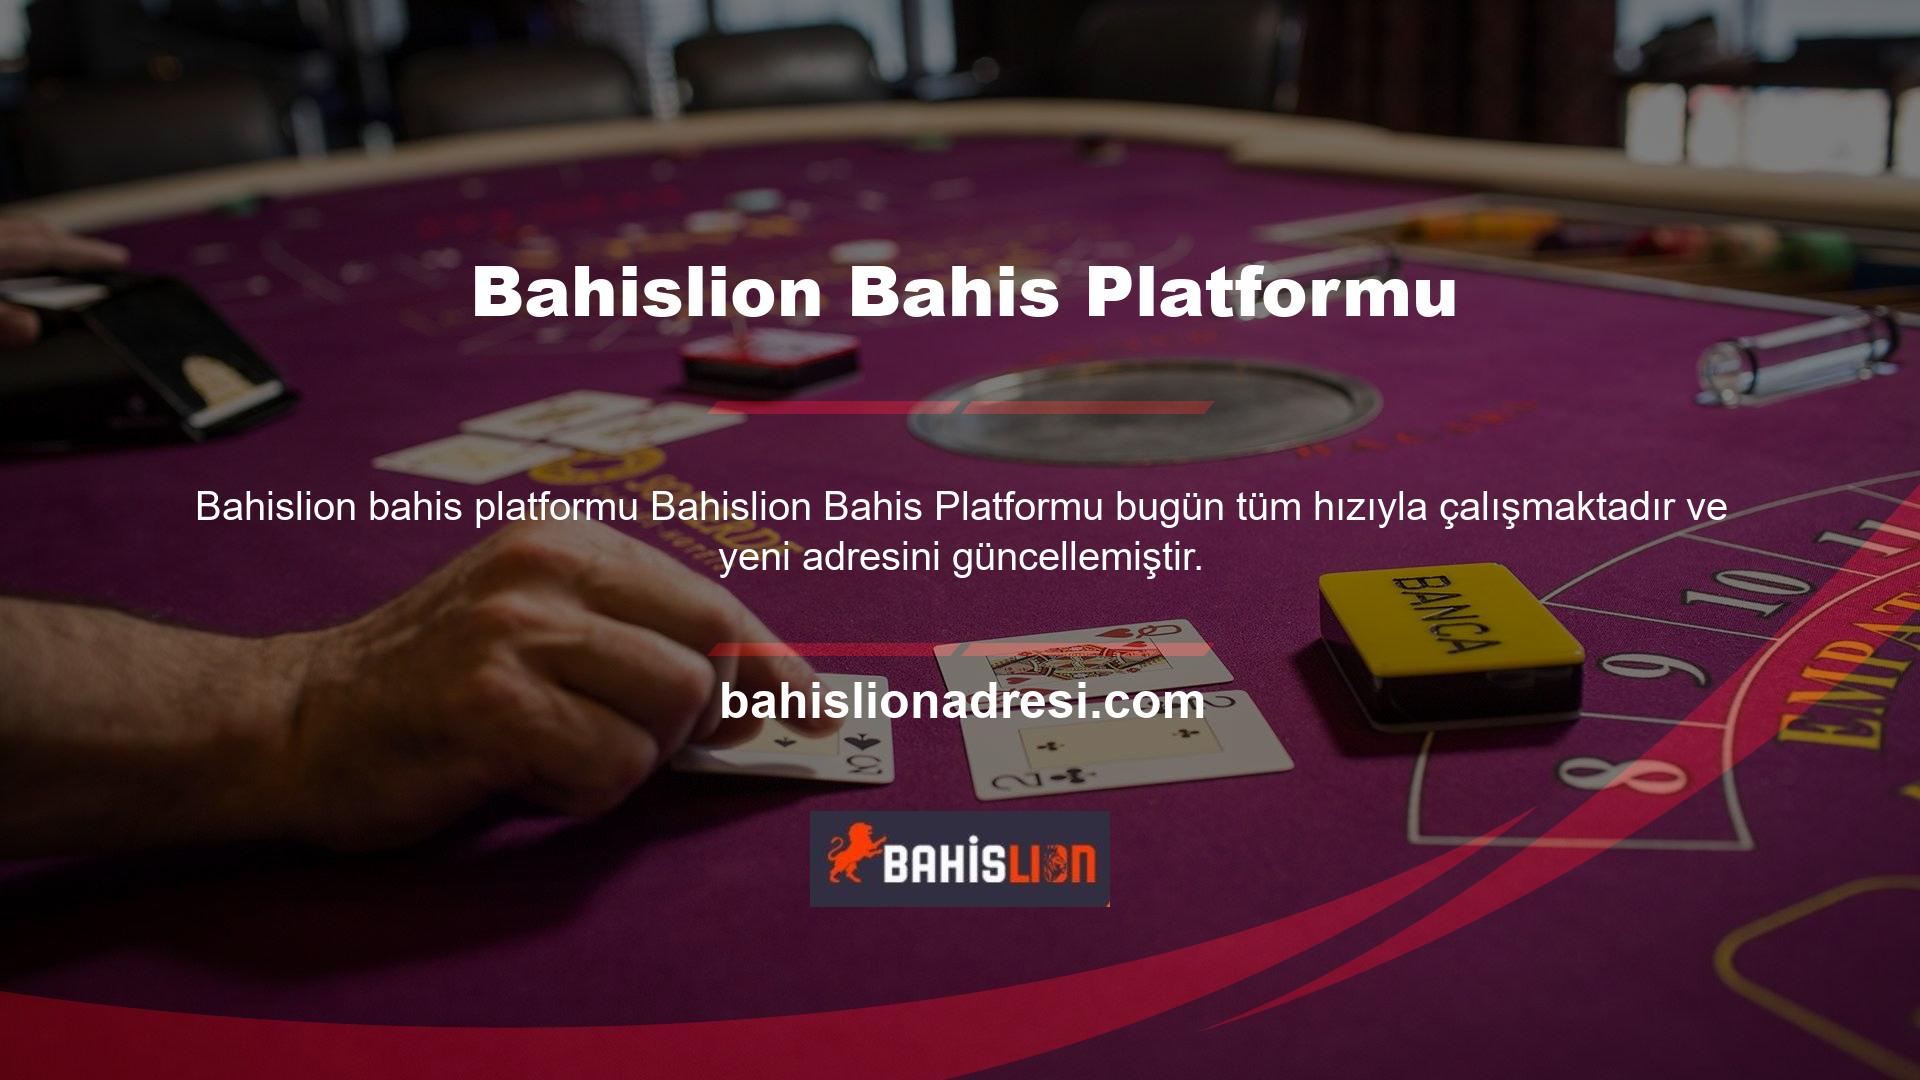 Casino sitelerinin sayısı arttıkça Bahislion, site içindeki casino siteleriyle rekabete girdi